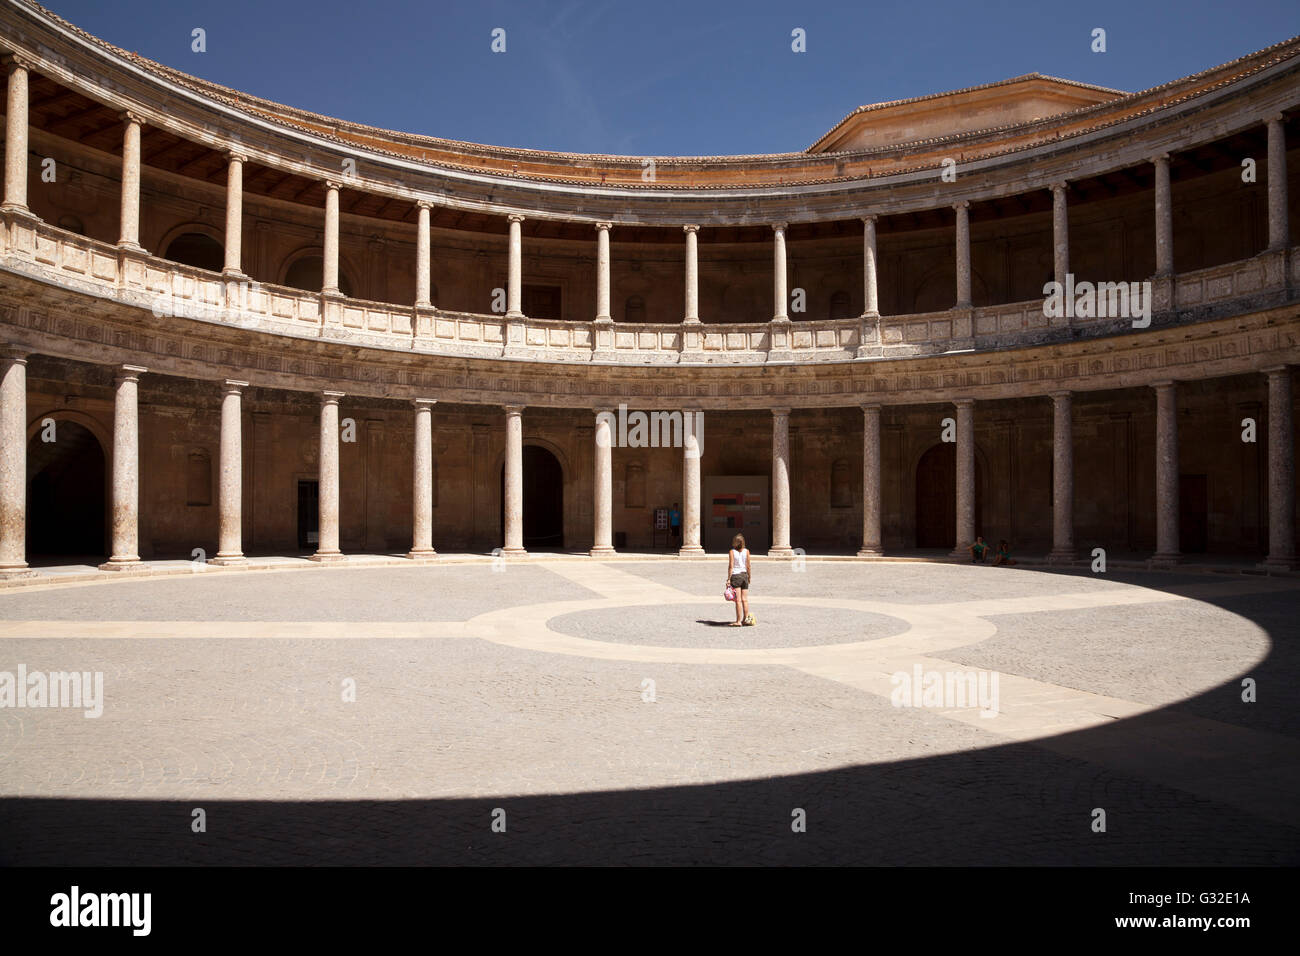 Palacio de Carlos-Palast, Palast von Charles V, auf dem Gelände der Alhambra, UNESCO-Weltkulturerbe, Granada, Andalusien Stockfoto